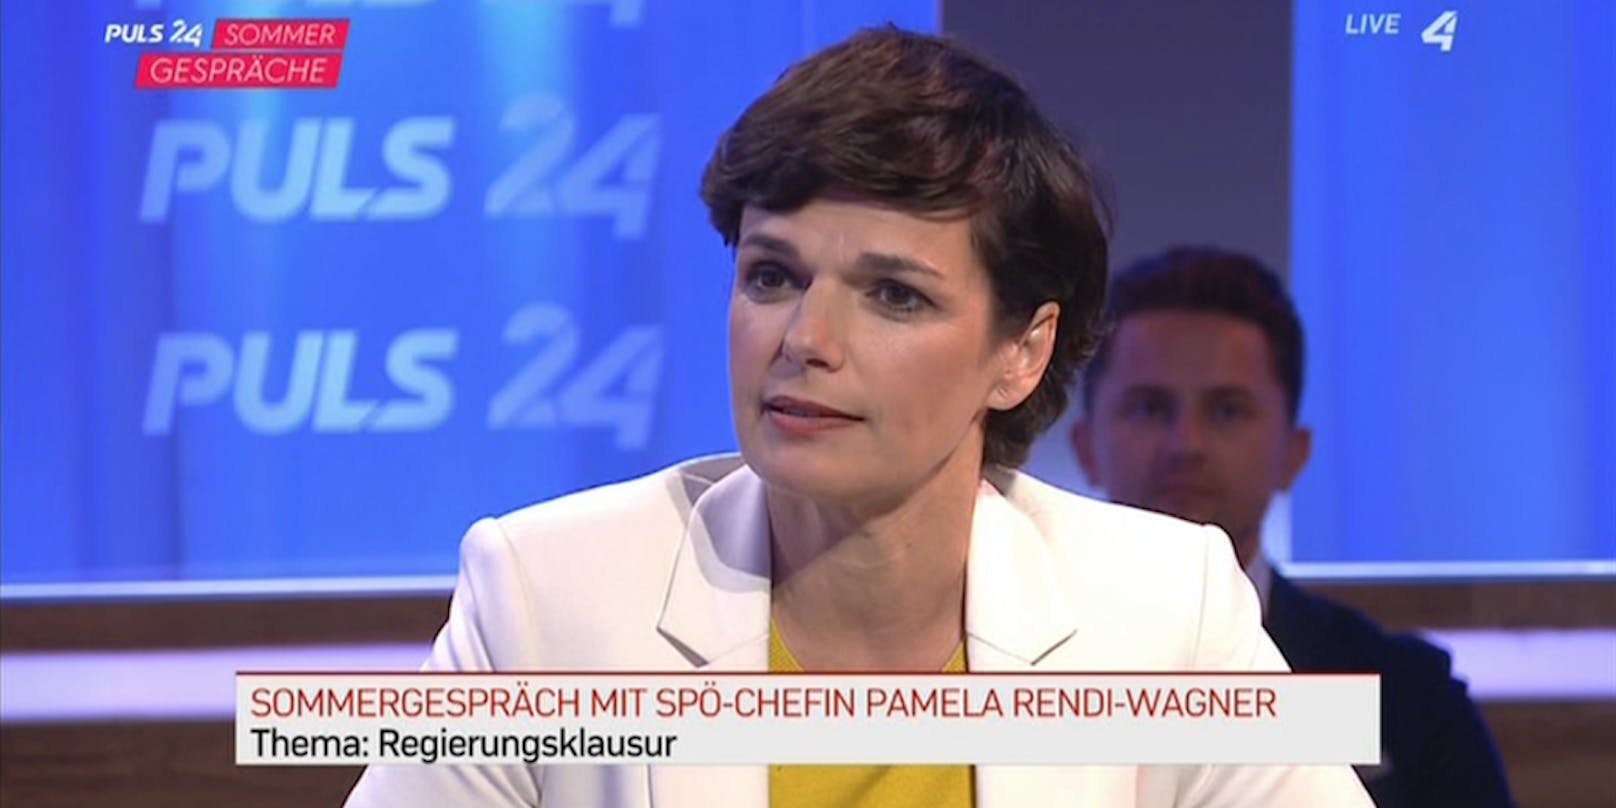 Rendi-Wagner: "Bundesregierung muss mutig an Lösungen rangehen, nicht zögerlich"